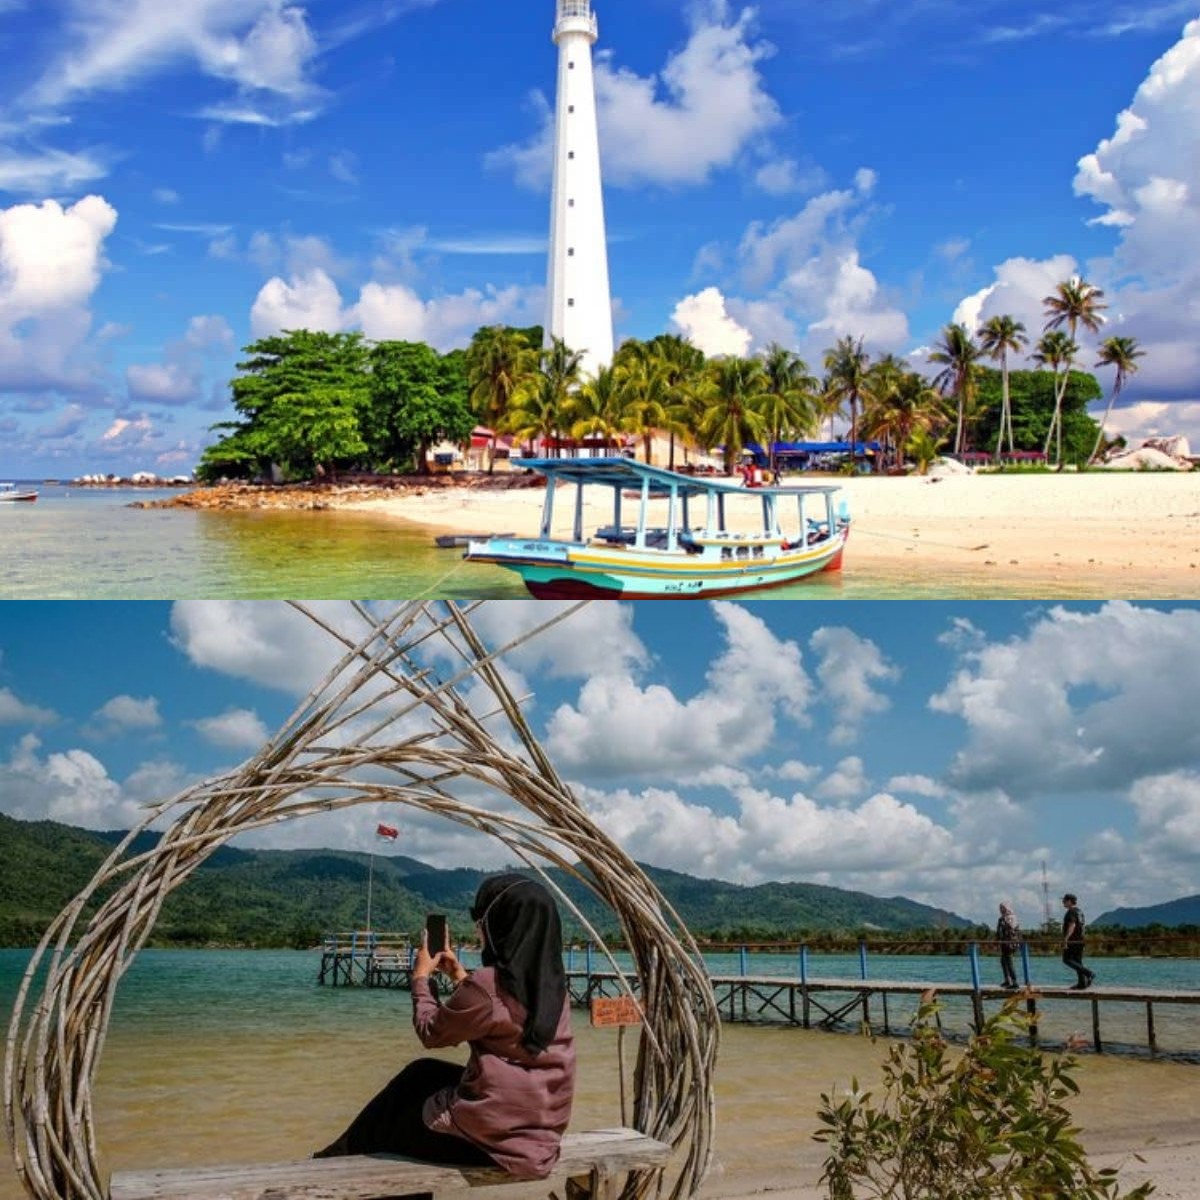 Wisata Bangka Belitung yang Sangat Mempesona, Hingga Dijadikan Tujuan Berwisata!